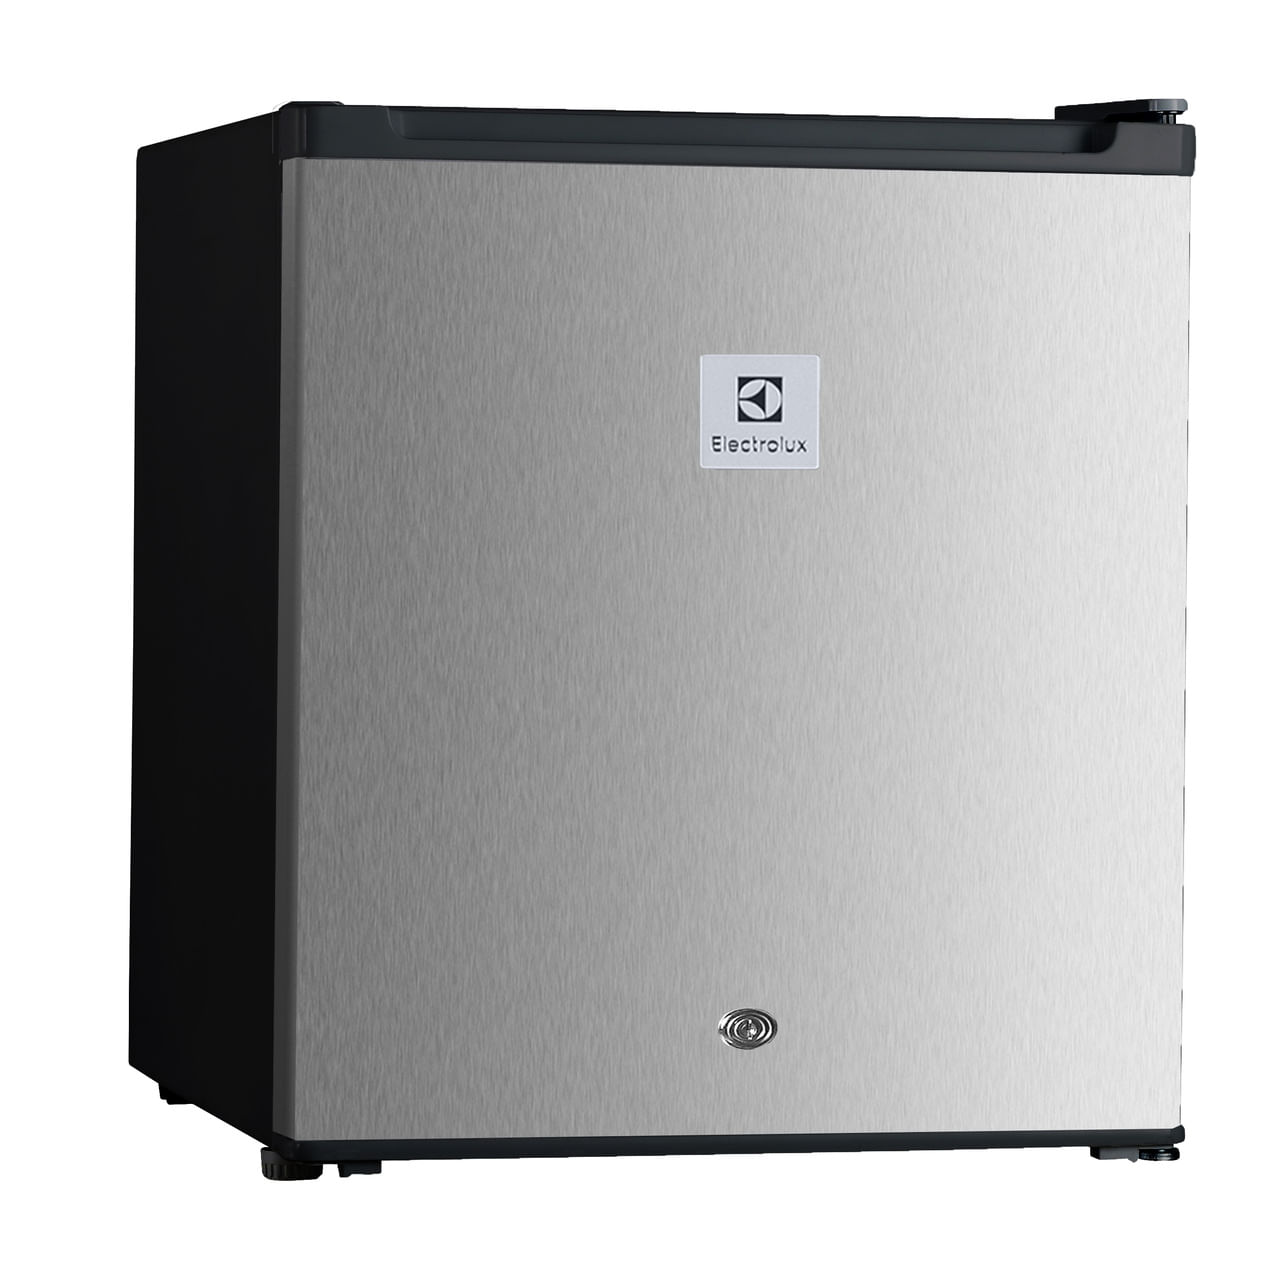 Minibar de 87 Litros 2 Puertas Refrigerador y Congelador Electrolux